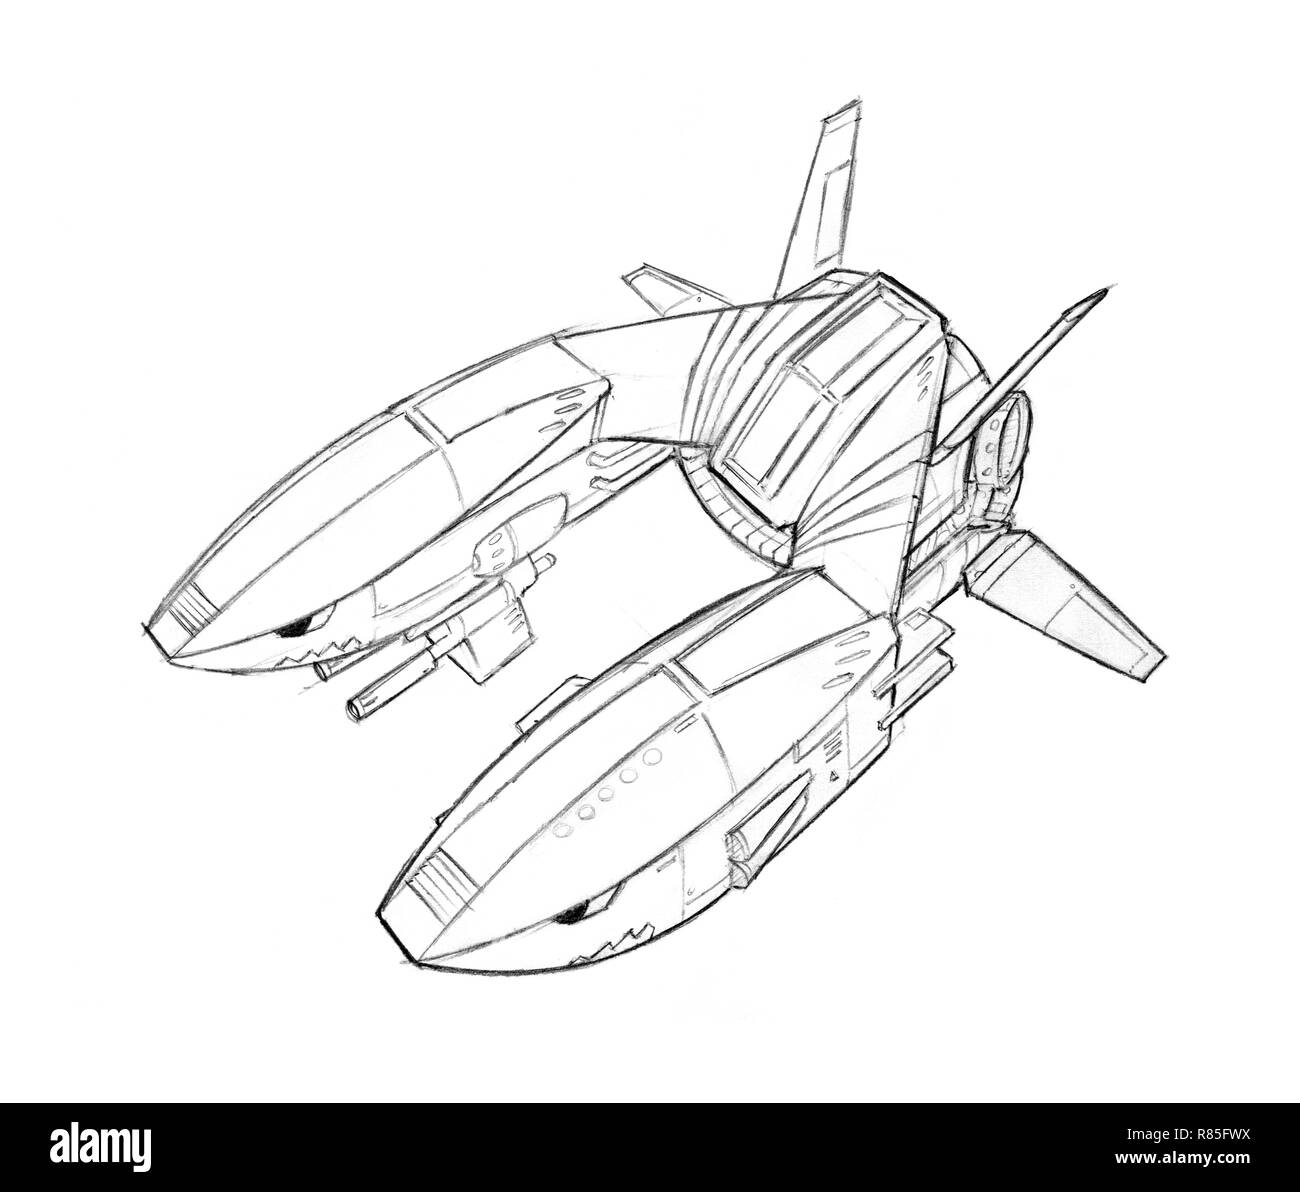 Concetto di inchiostro arte disegno della futuristica navicella spaziale o di aeromobili Foto Stock